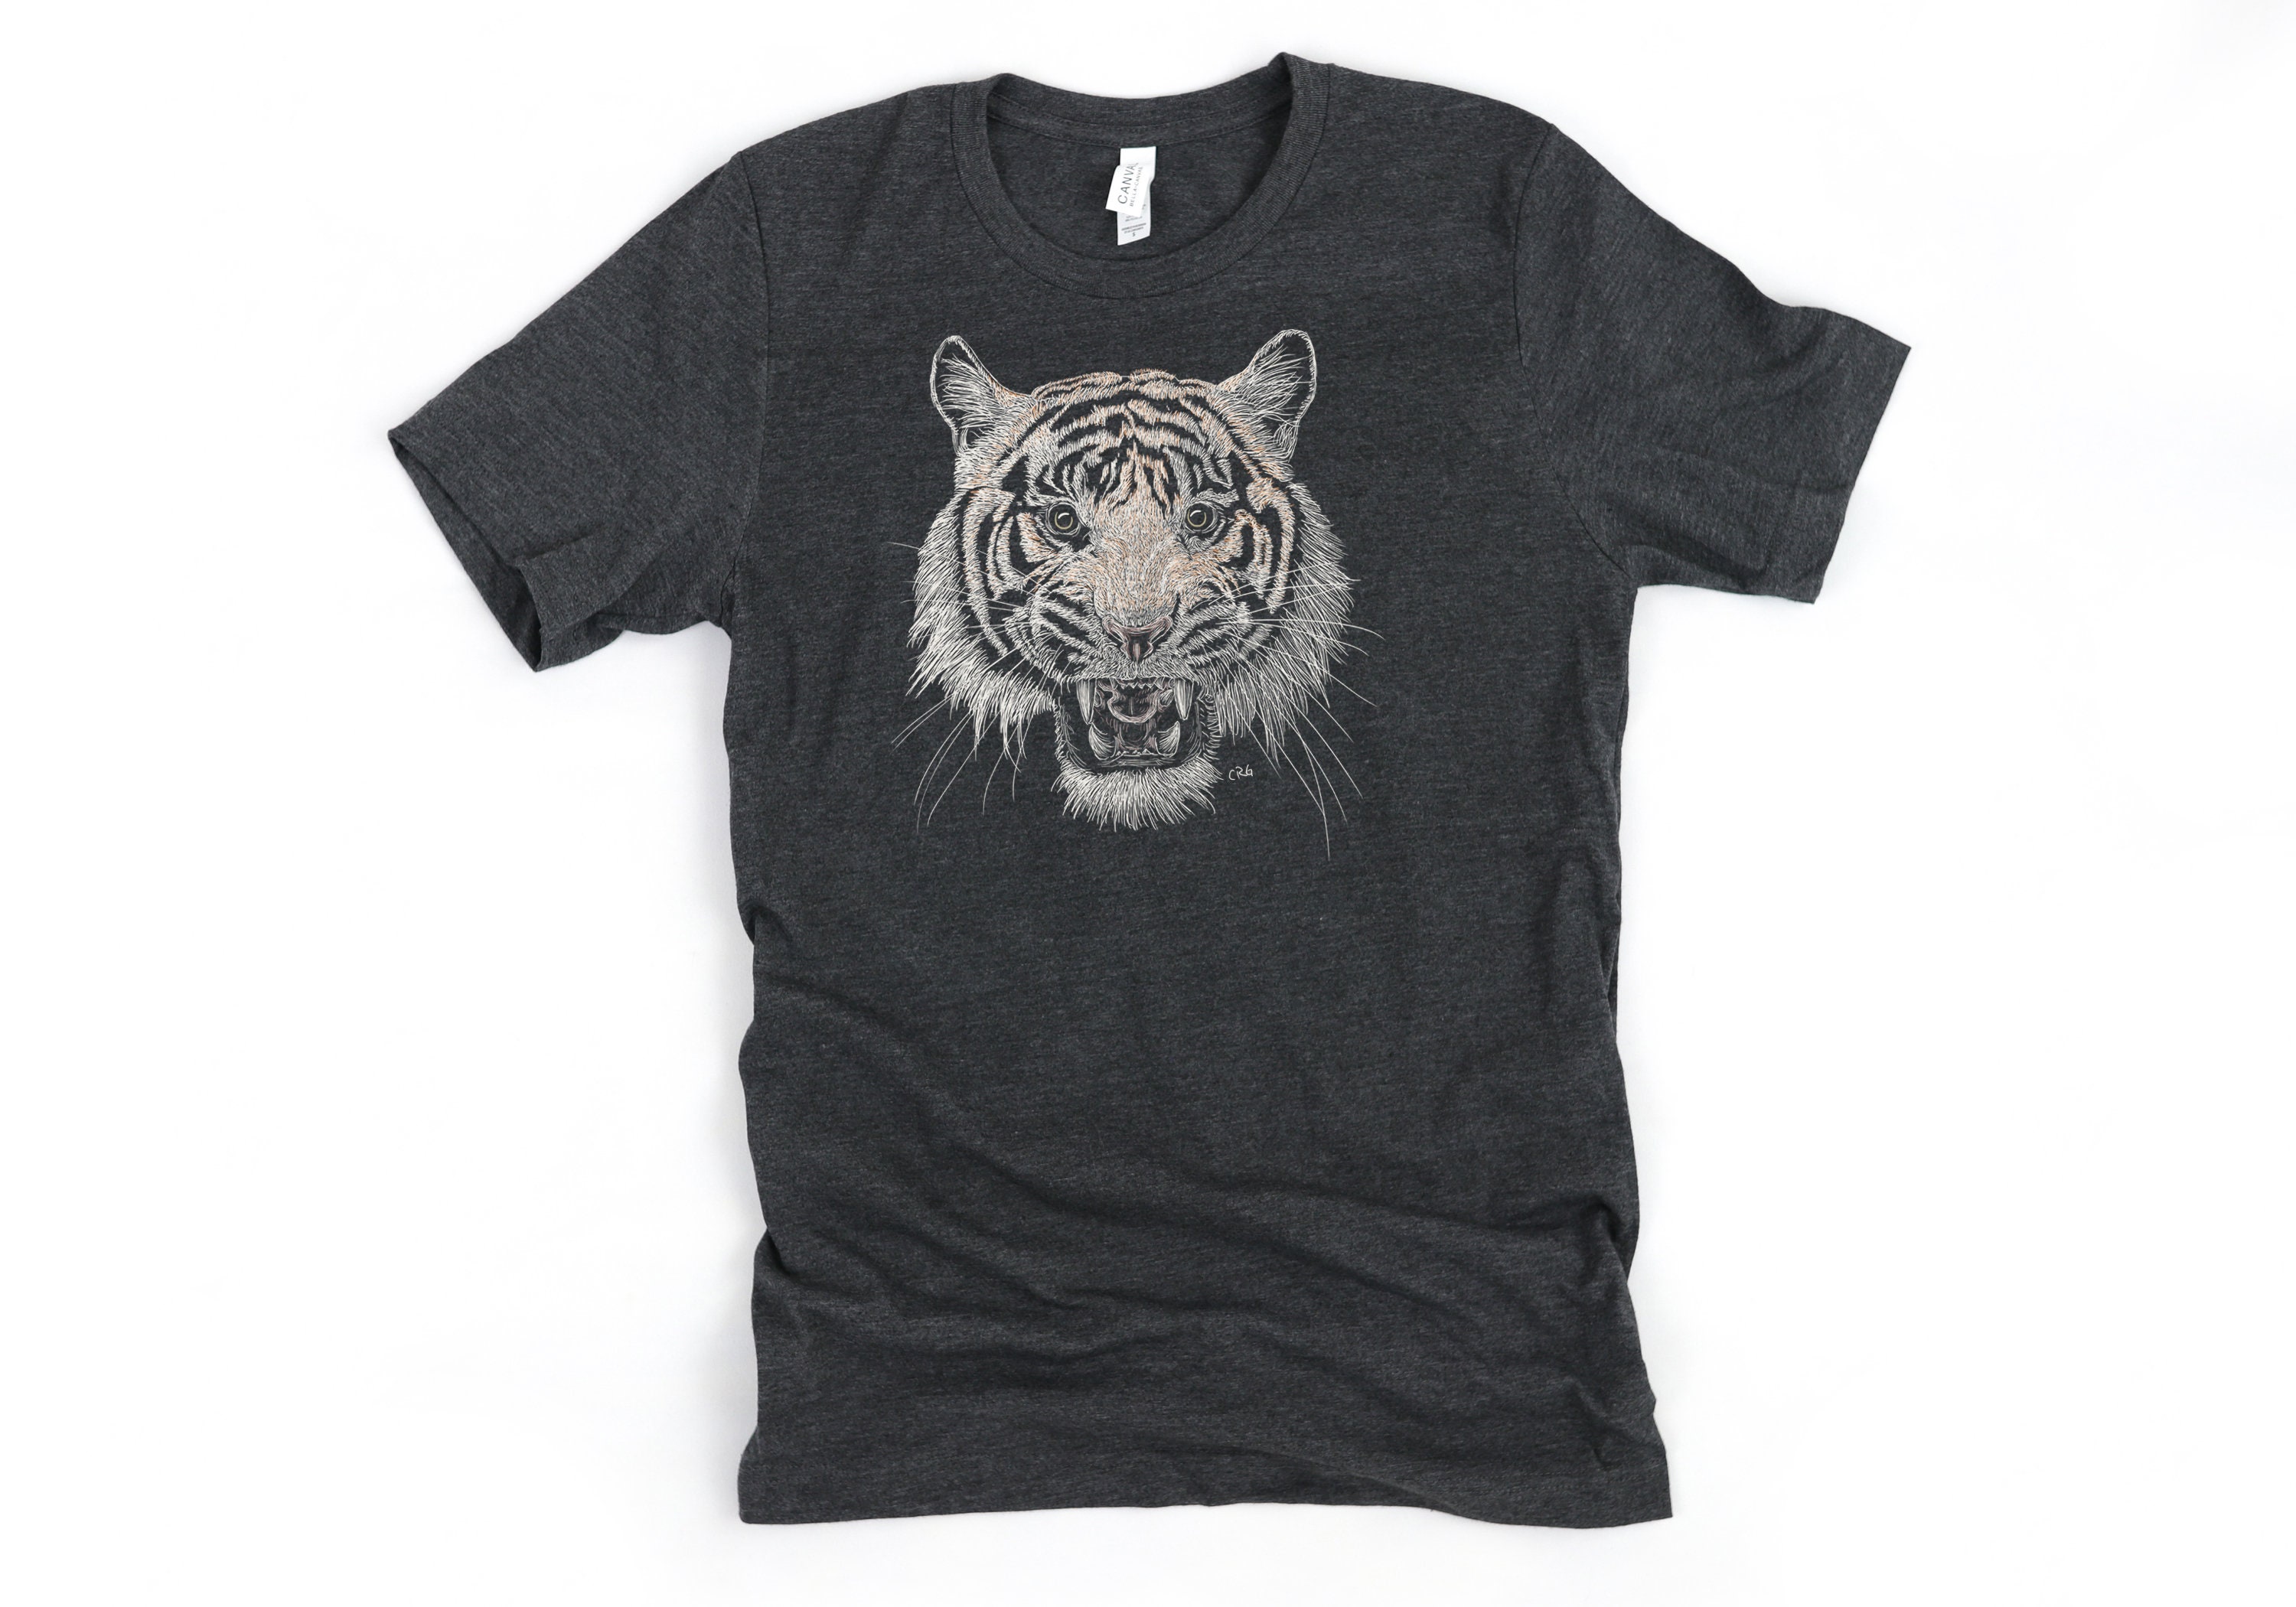 Tiger Shirt / Tiger / Tigers Shirt / Tiger T-Shirt / Tiger T | Etsy